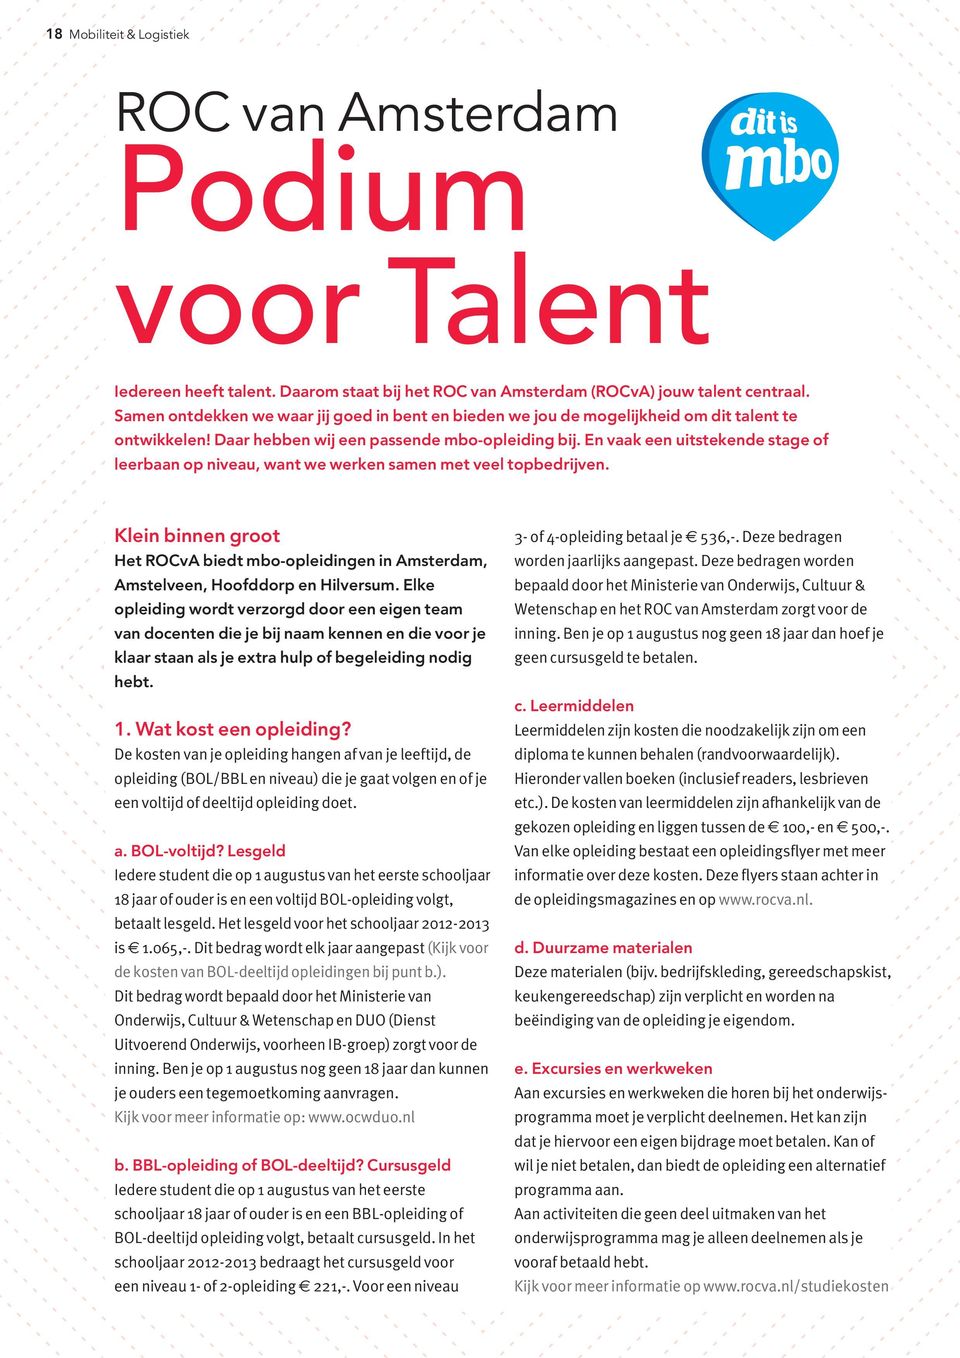 En vaak een uitstekende stage of leerbaan op niveau, want we werken samen met veel topbedrijven. Klein binnen groot Het ROCvA biedt mbo-opleidingen in Amsterdam, Amstelveen, Hoofddorp en Hilversum.